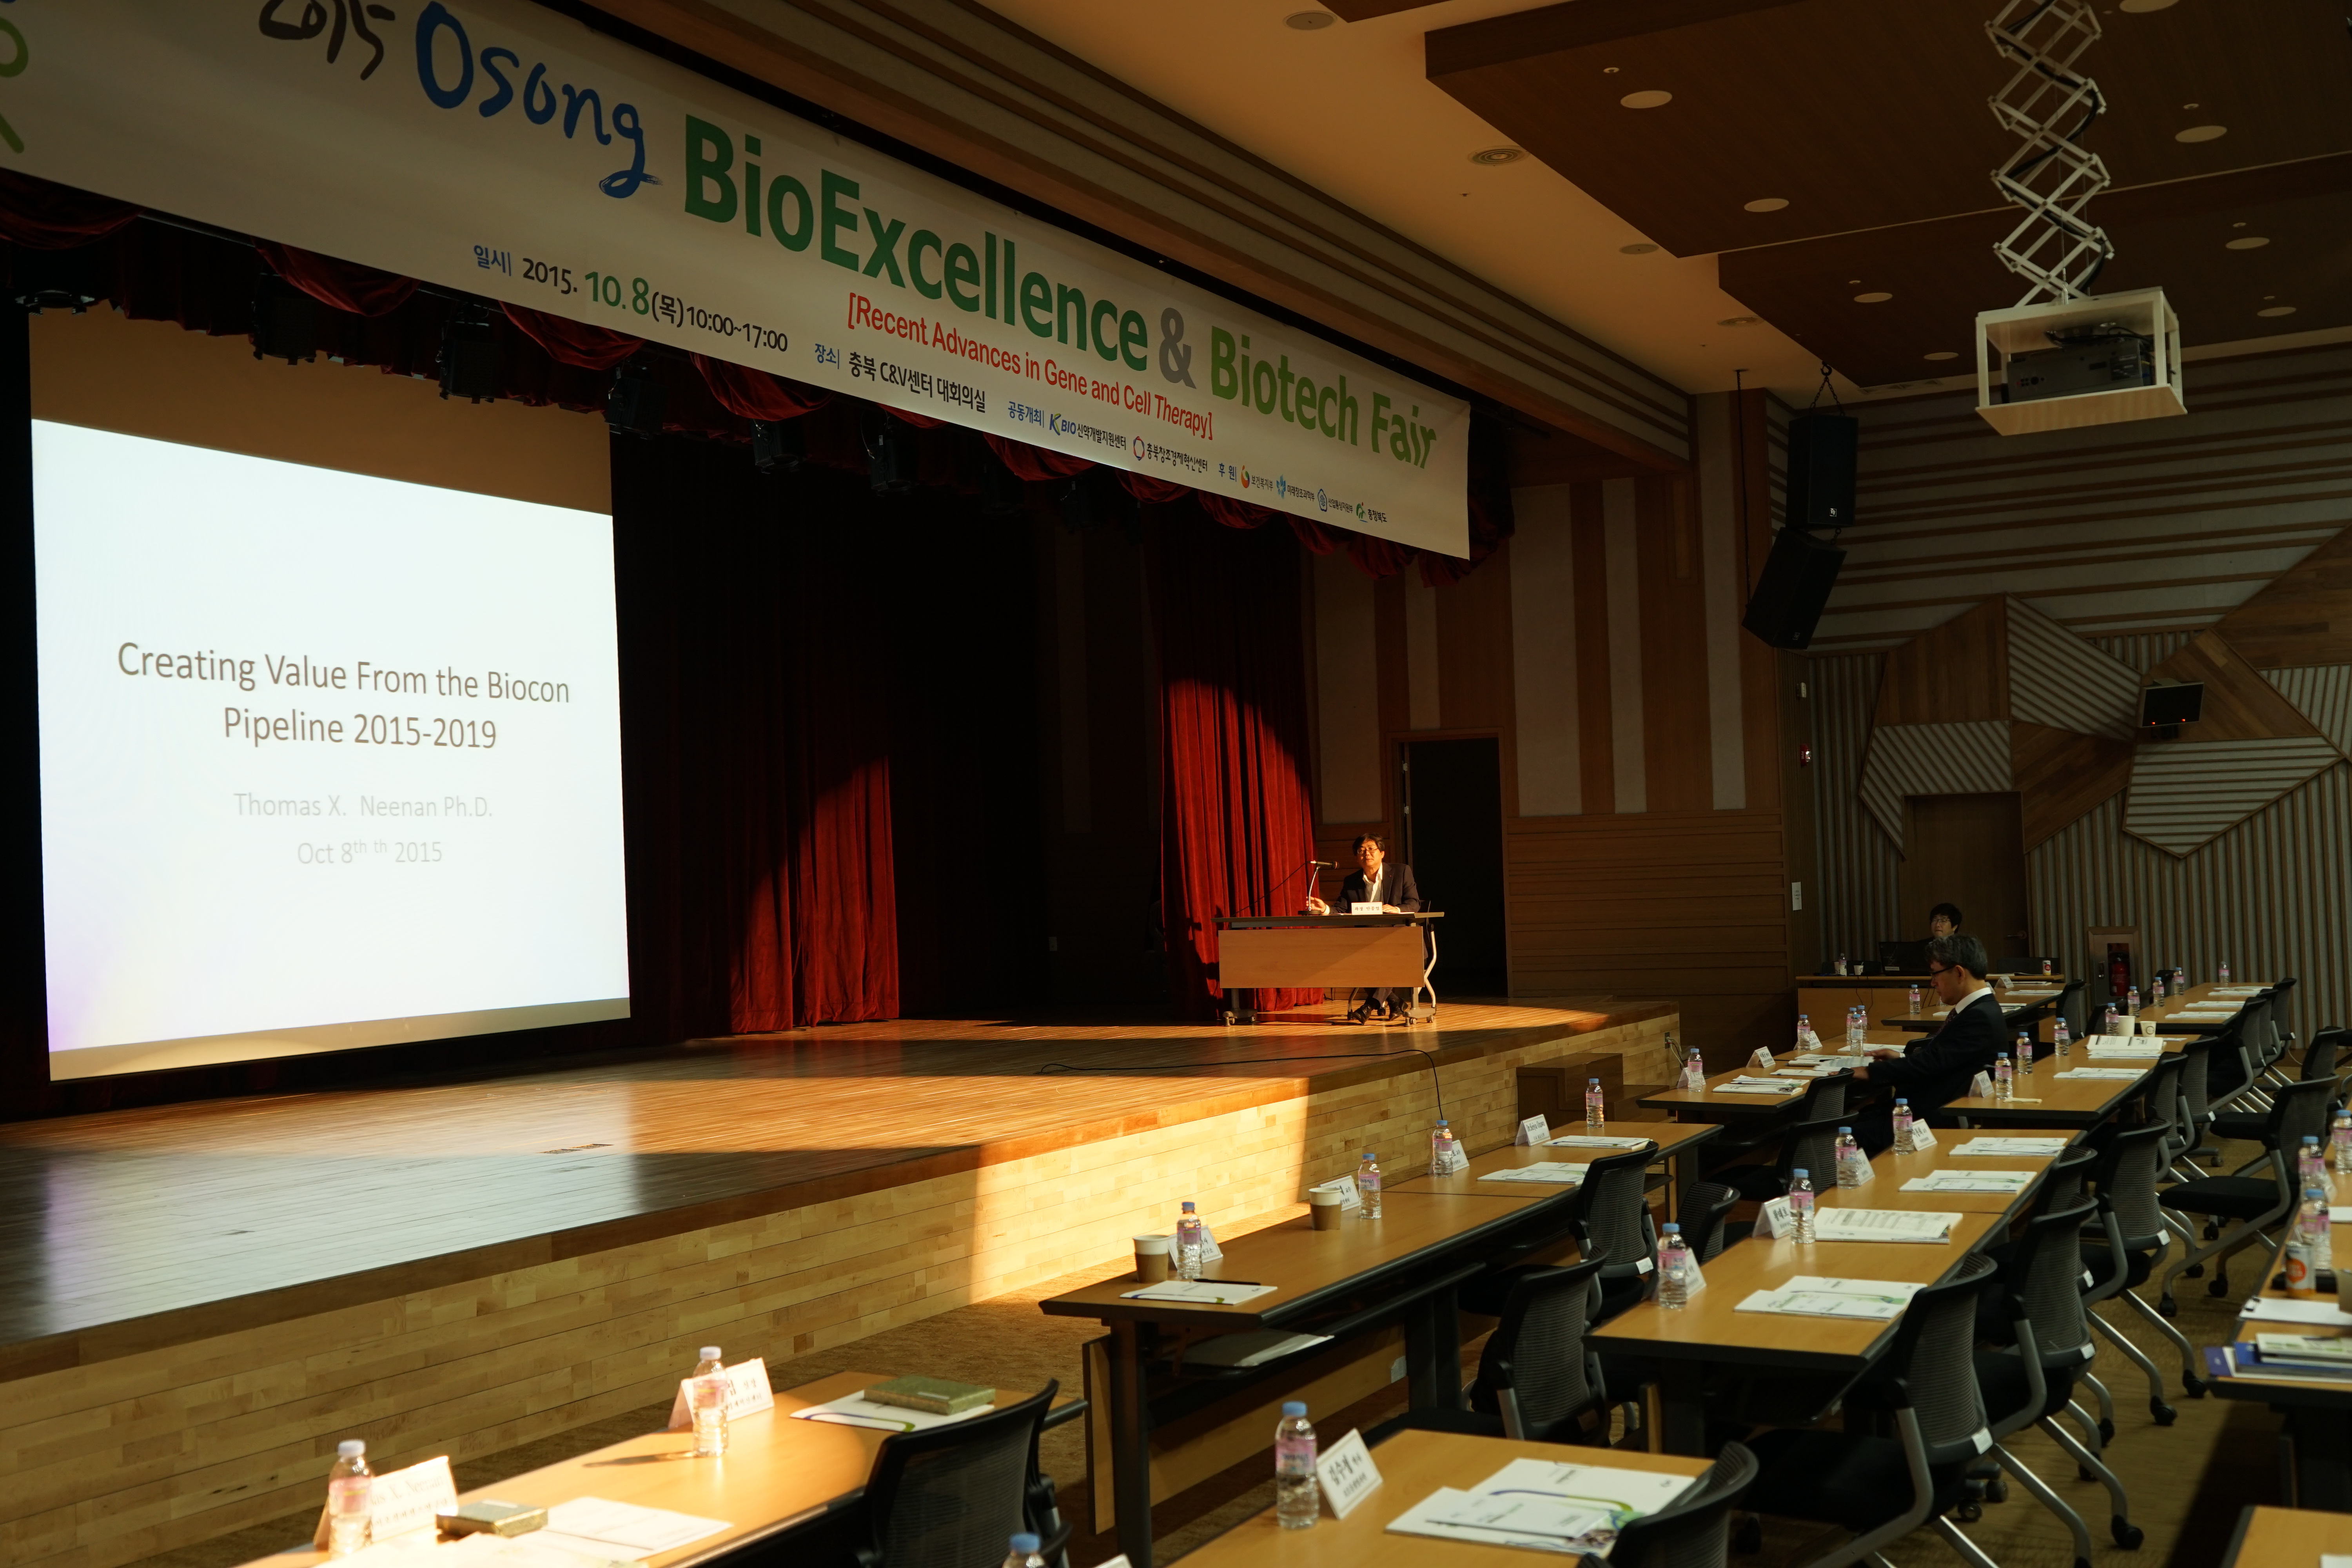 2015 Osong BioExcellence & Biotech Fair  